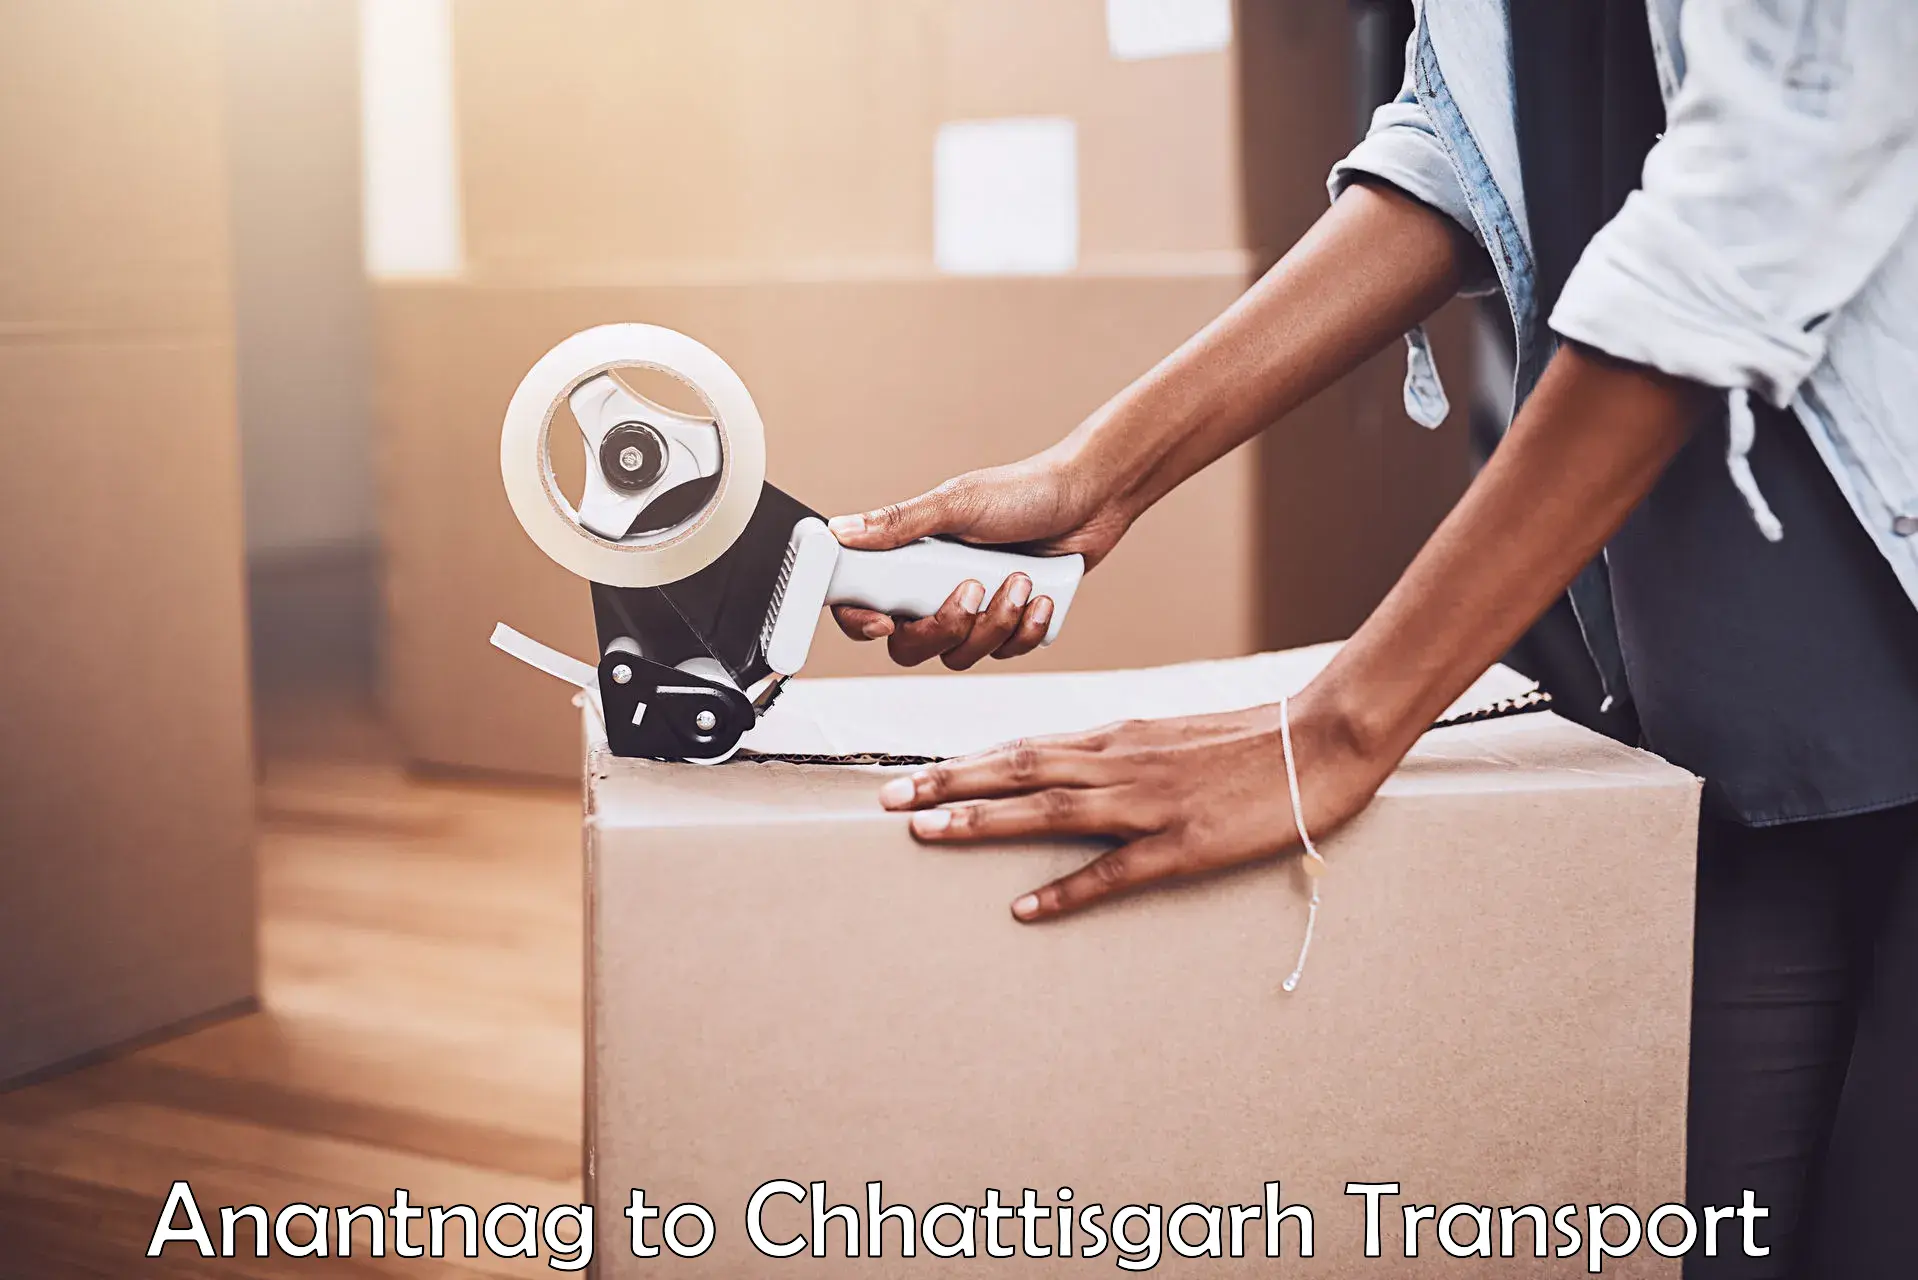 Furniture transport service Anantnag to Pandariya